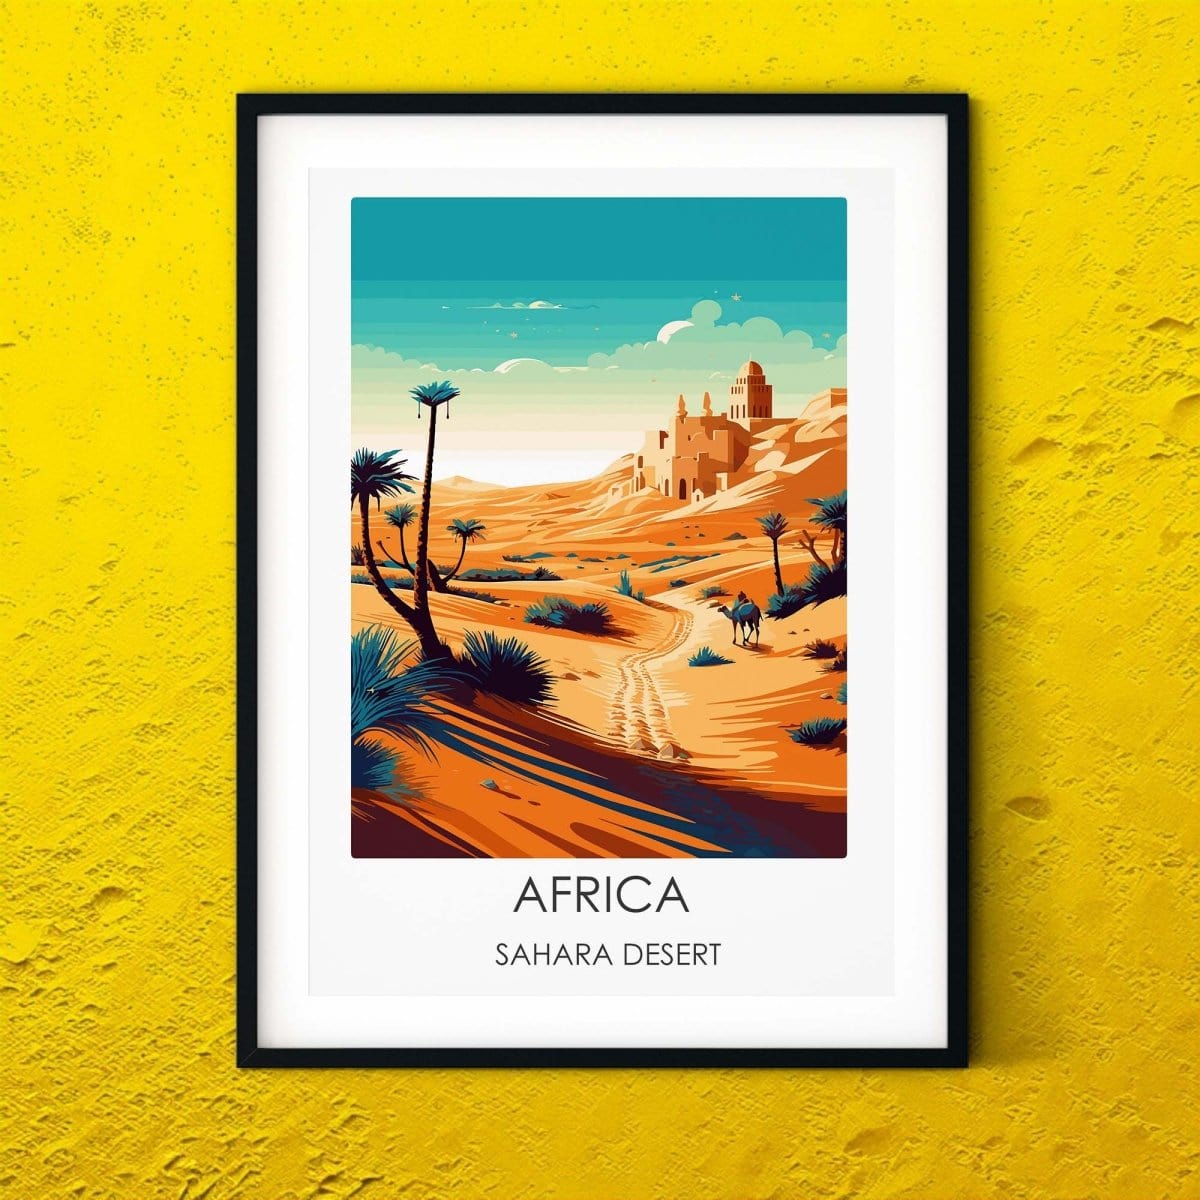 Africa Sahara Desert modern travel print graphic travel poster